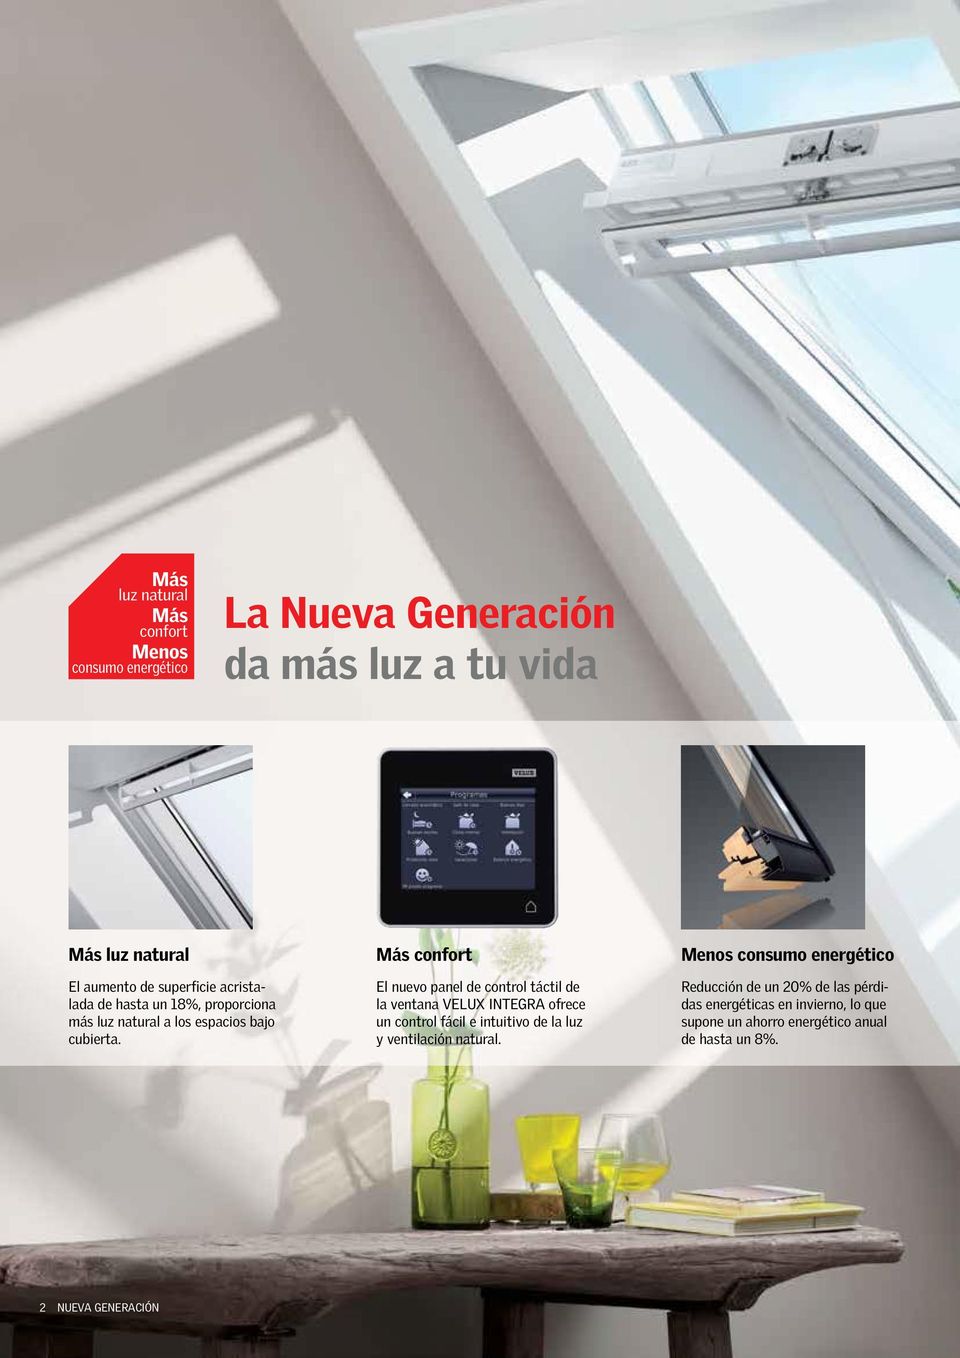 El nuevo panel de control táctil de la ventana VELUX INTEGRA ofrece un control fácil e intuitivo de la luz y ventilación